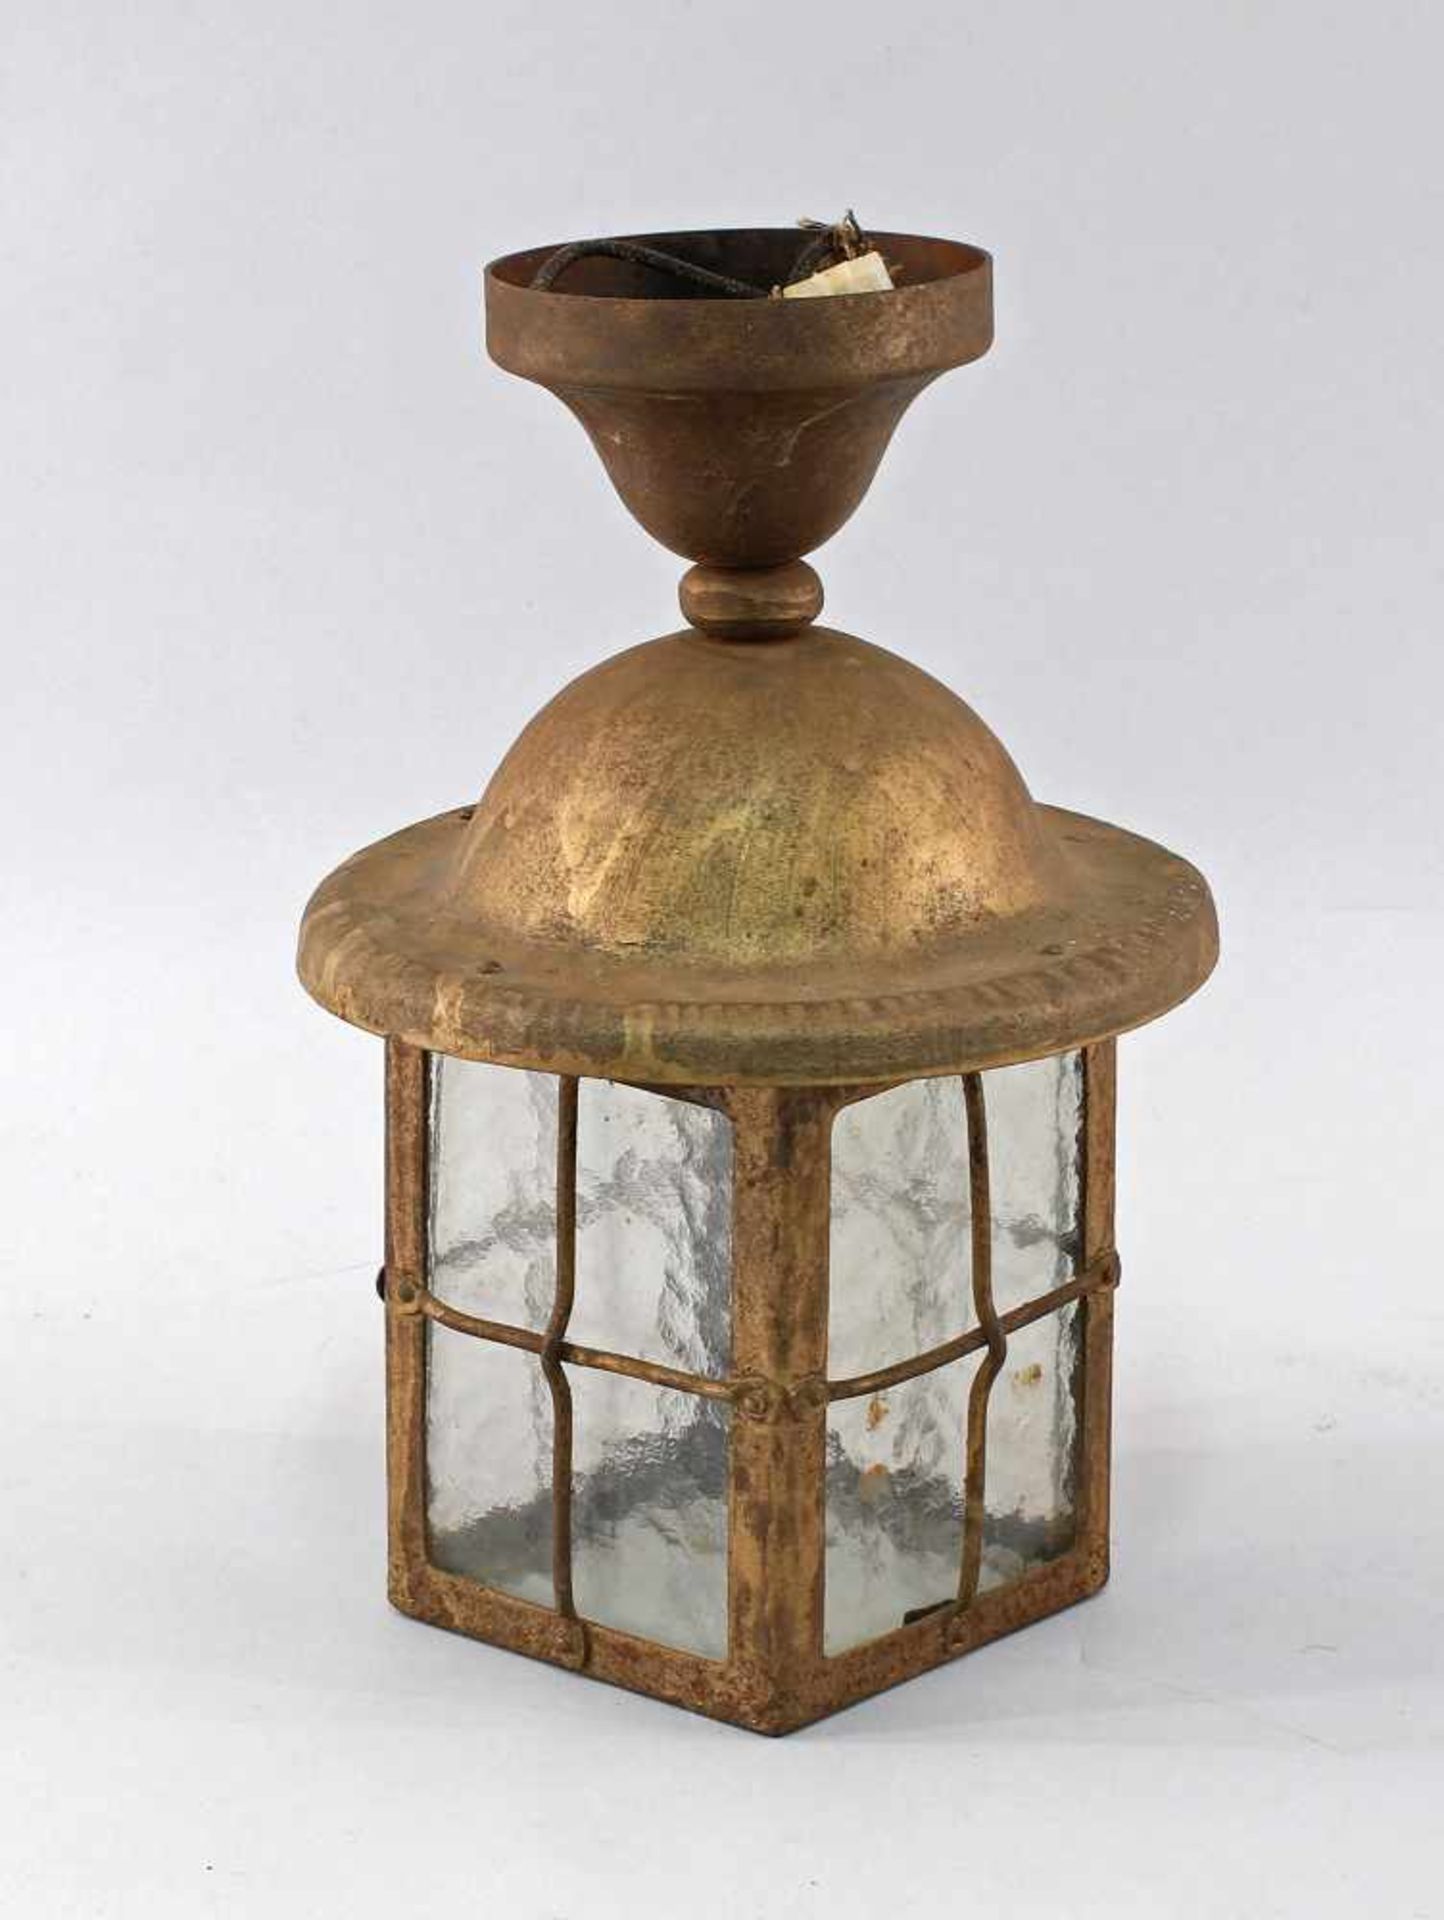 Antike Deckenlampeum 1910, Eisen, goldfarb. gefasst, 5-Seiten Verglasung, alt elektrifiziert,